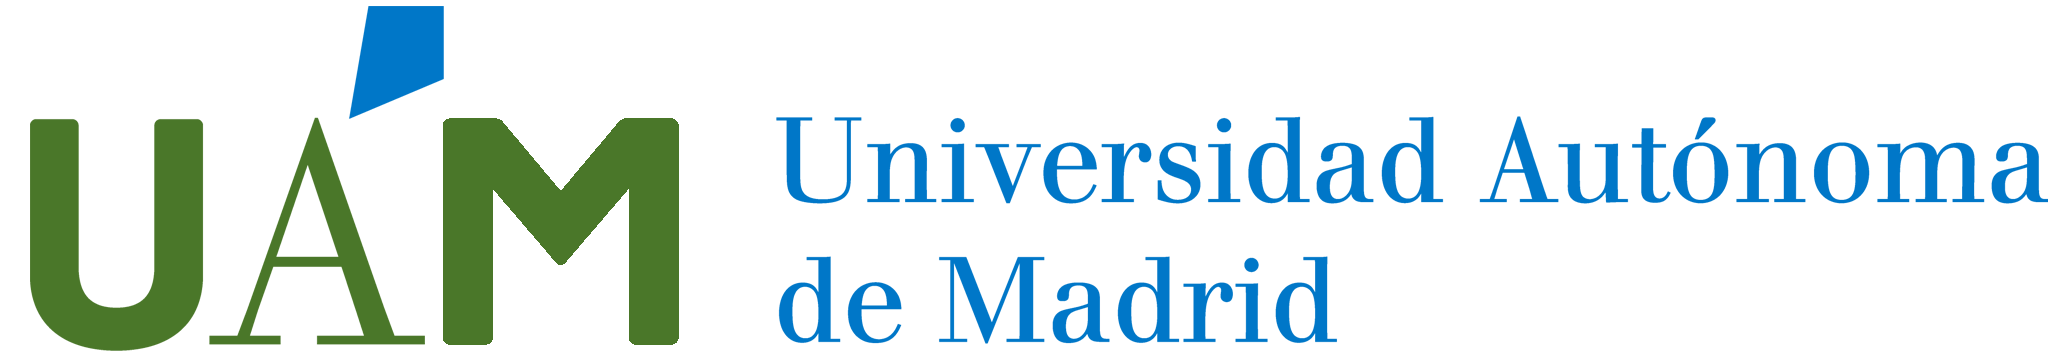 Universidad Autónoma de Madrid Página de inicio